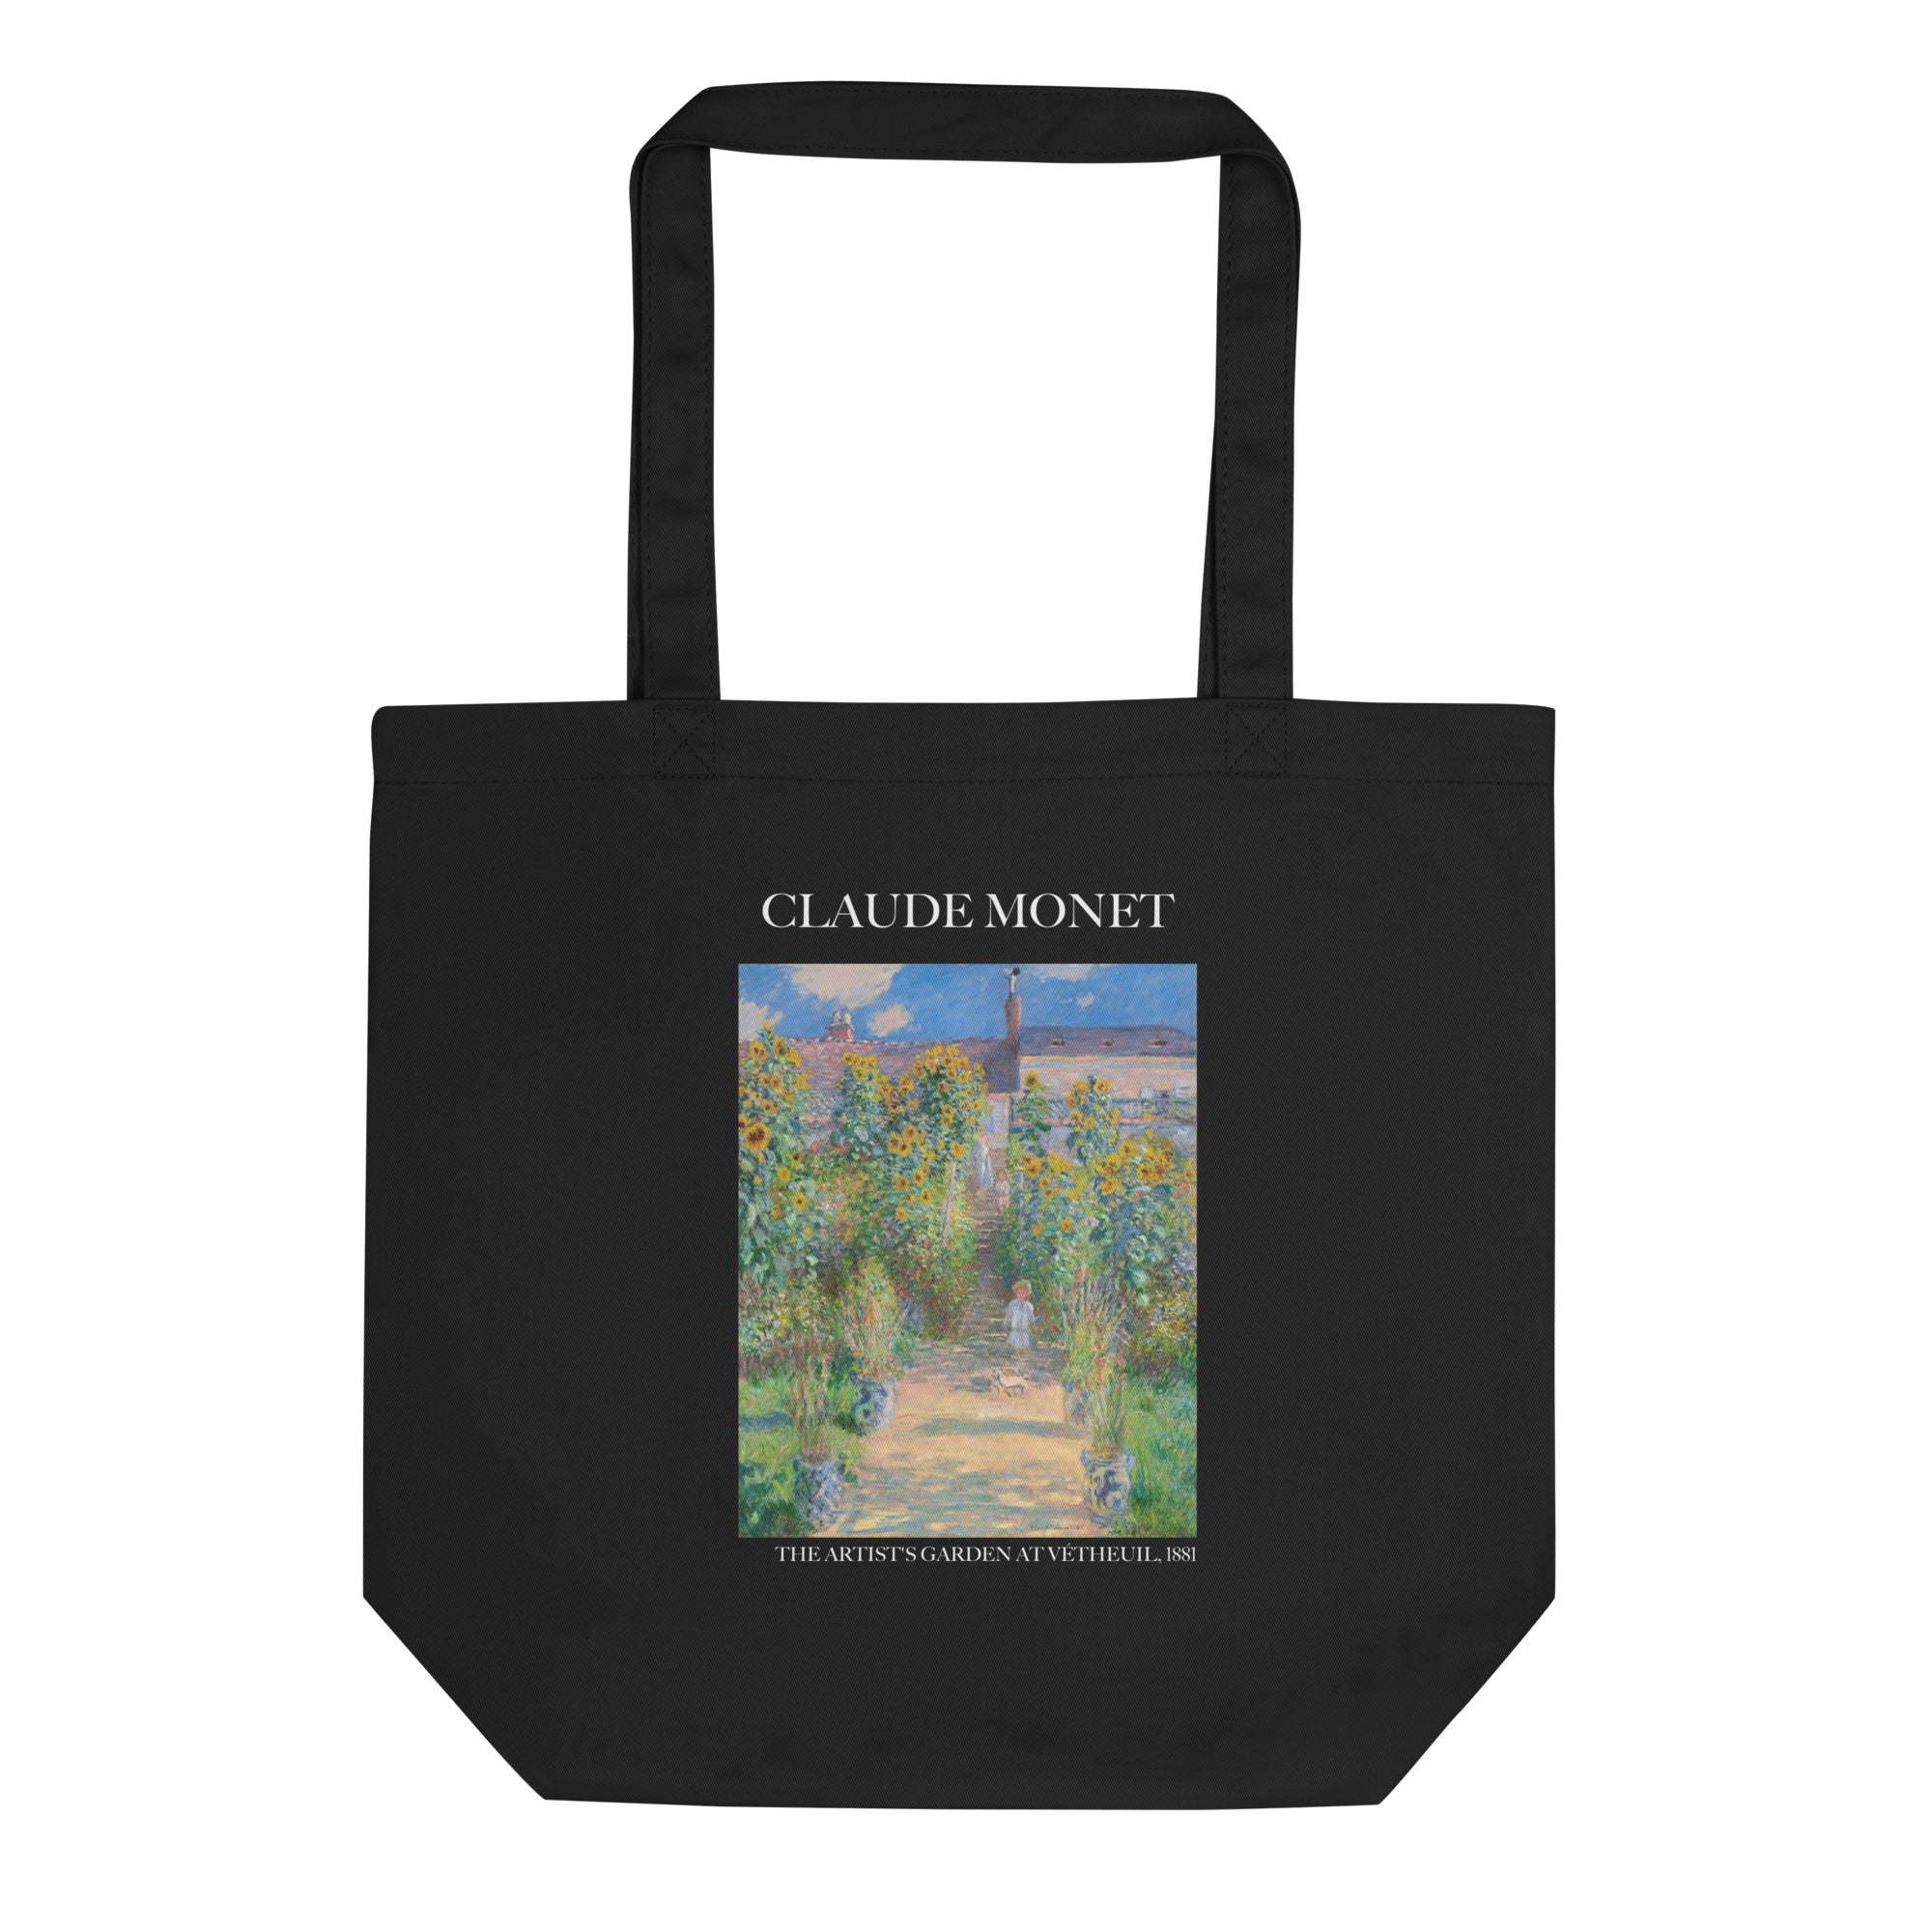 Claude Monet 'Der Garten des Künstlers in Vétheuil' berühmtes Gemälde Tragetasche | Umweltfreundliche Kunst Tragetasche